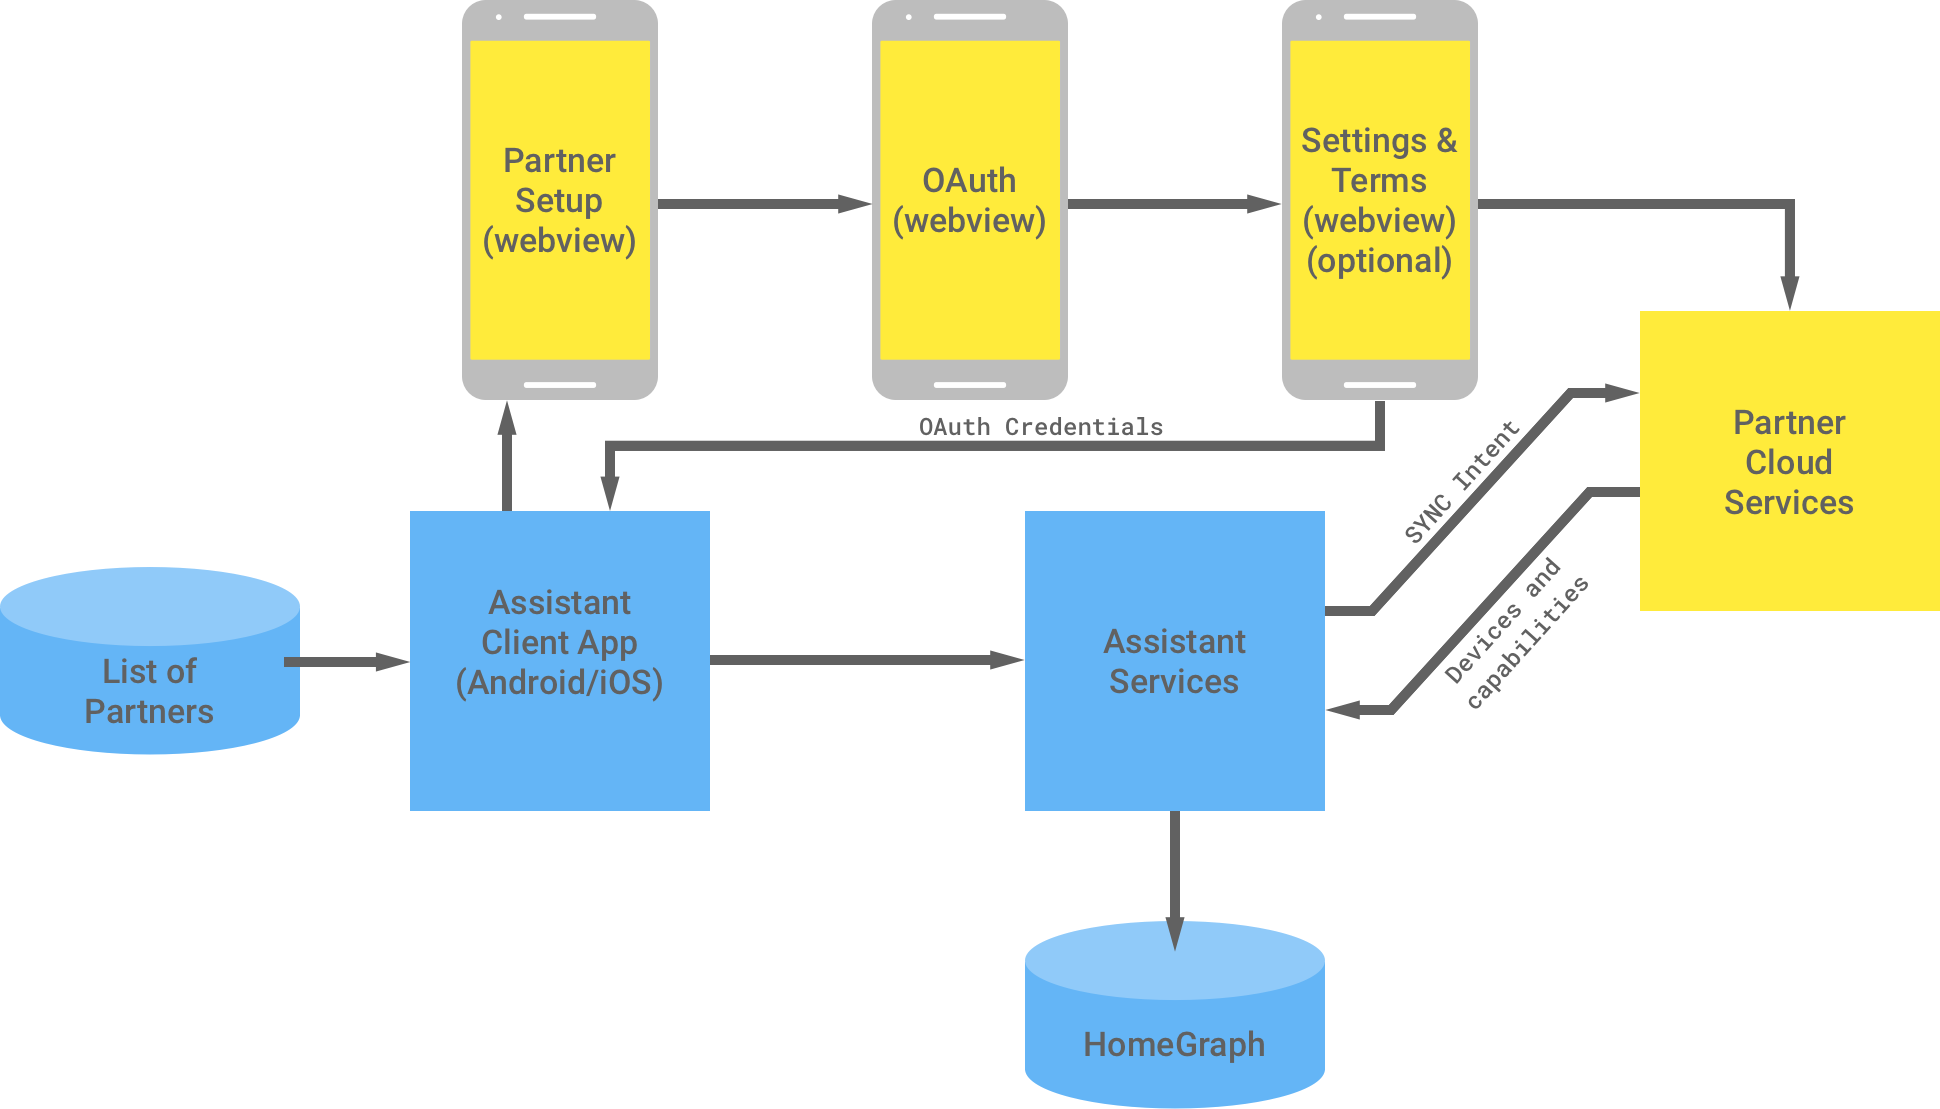 En esta figura, se muestra la interacción entre la infraestructura de Google y la del socio. Desde la infraestructura de Google, hay una lista de socios disponible para la app cliente del Asistente, que luego fluye a la infraestructura del socio para completar la autenticación de OAuth. Del lado del socio, la autenticación de OAuth es la WebView de configuración del socio, la WebView de OAuth, la configuración opcional y las condiciones, y los servicios de nube del socio. La infraestructura del socio muestra las credenciales de OAuth a la app cliente de Asistente. Los servicios en la nube del socio envían los dispositivos y las capacidades disponibles a los servicios de Asistente, que luego almacena la información en Home Graph.